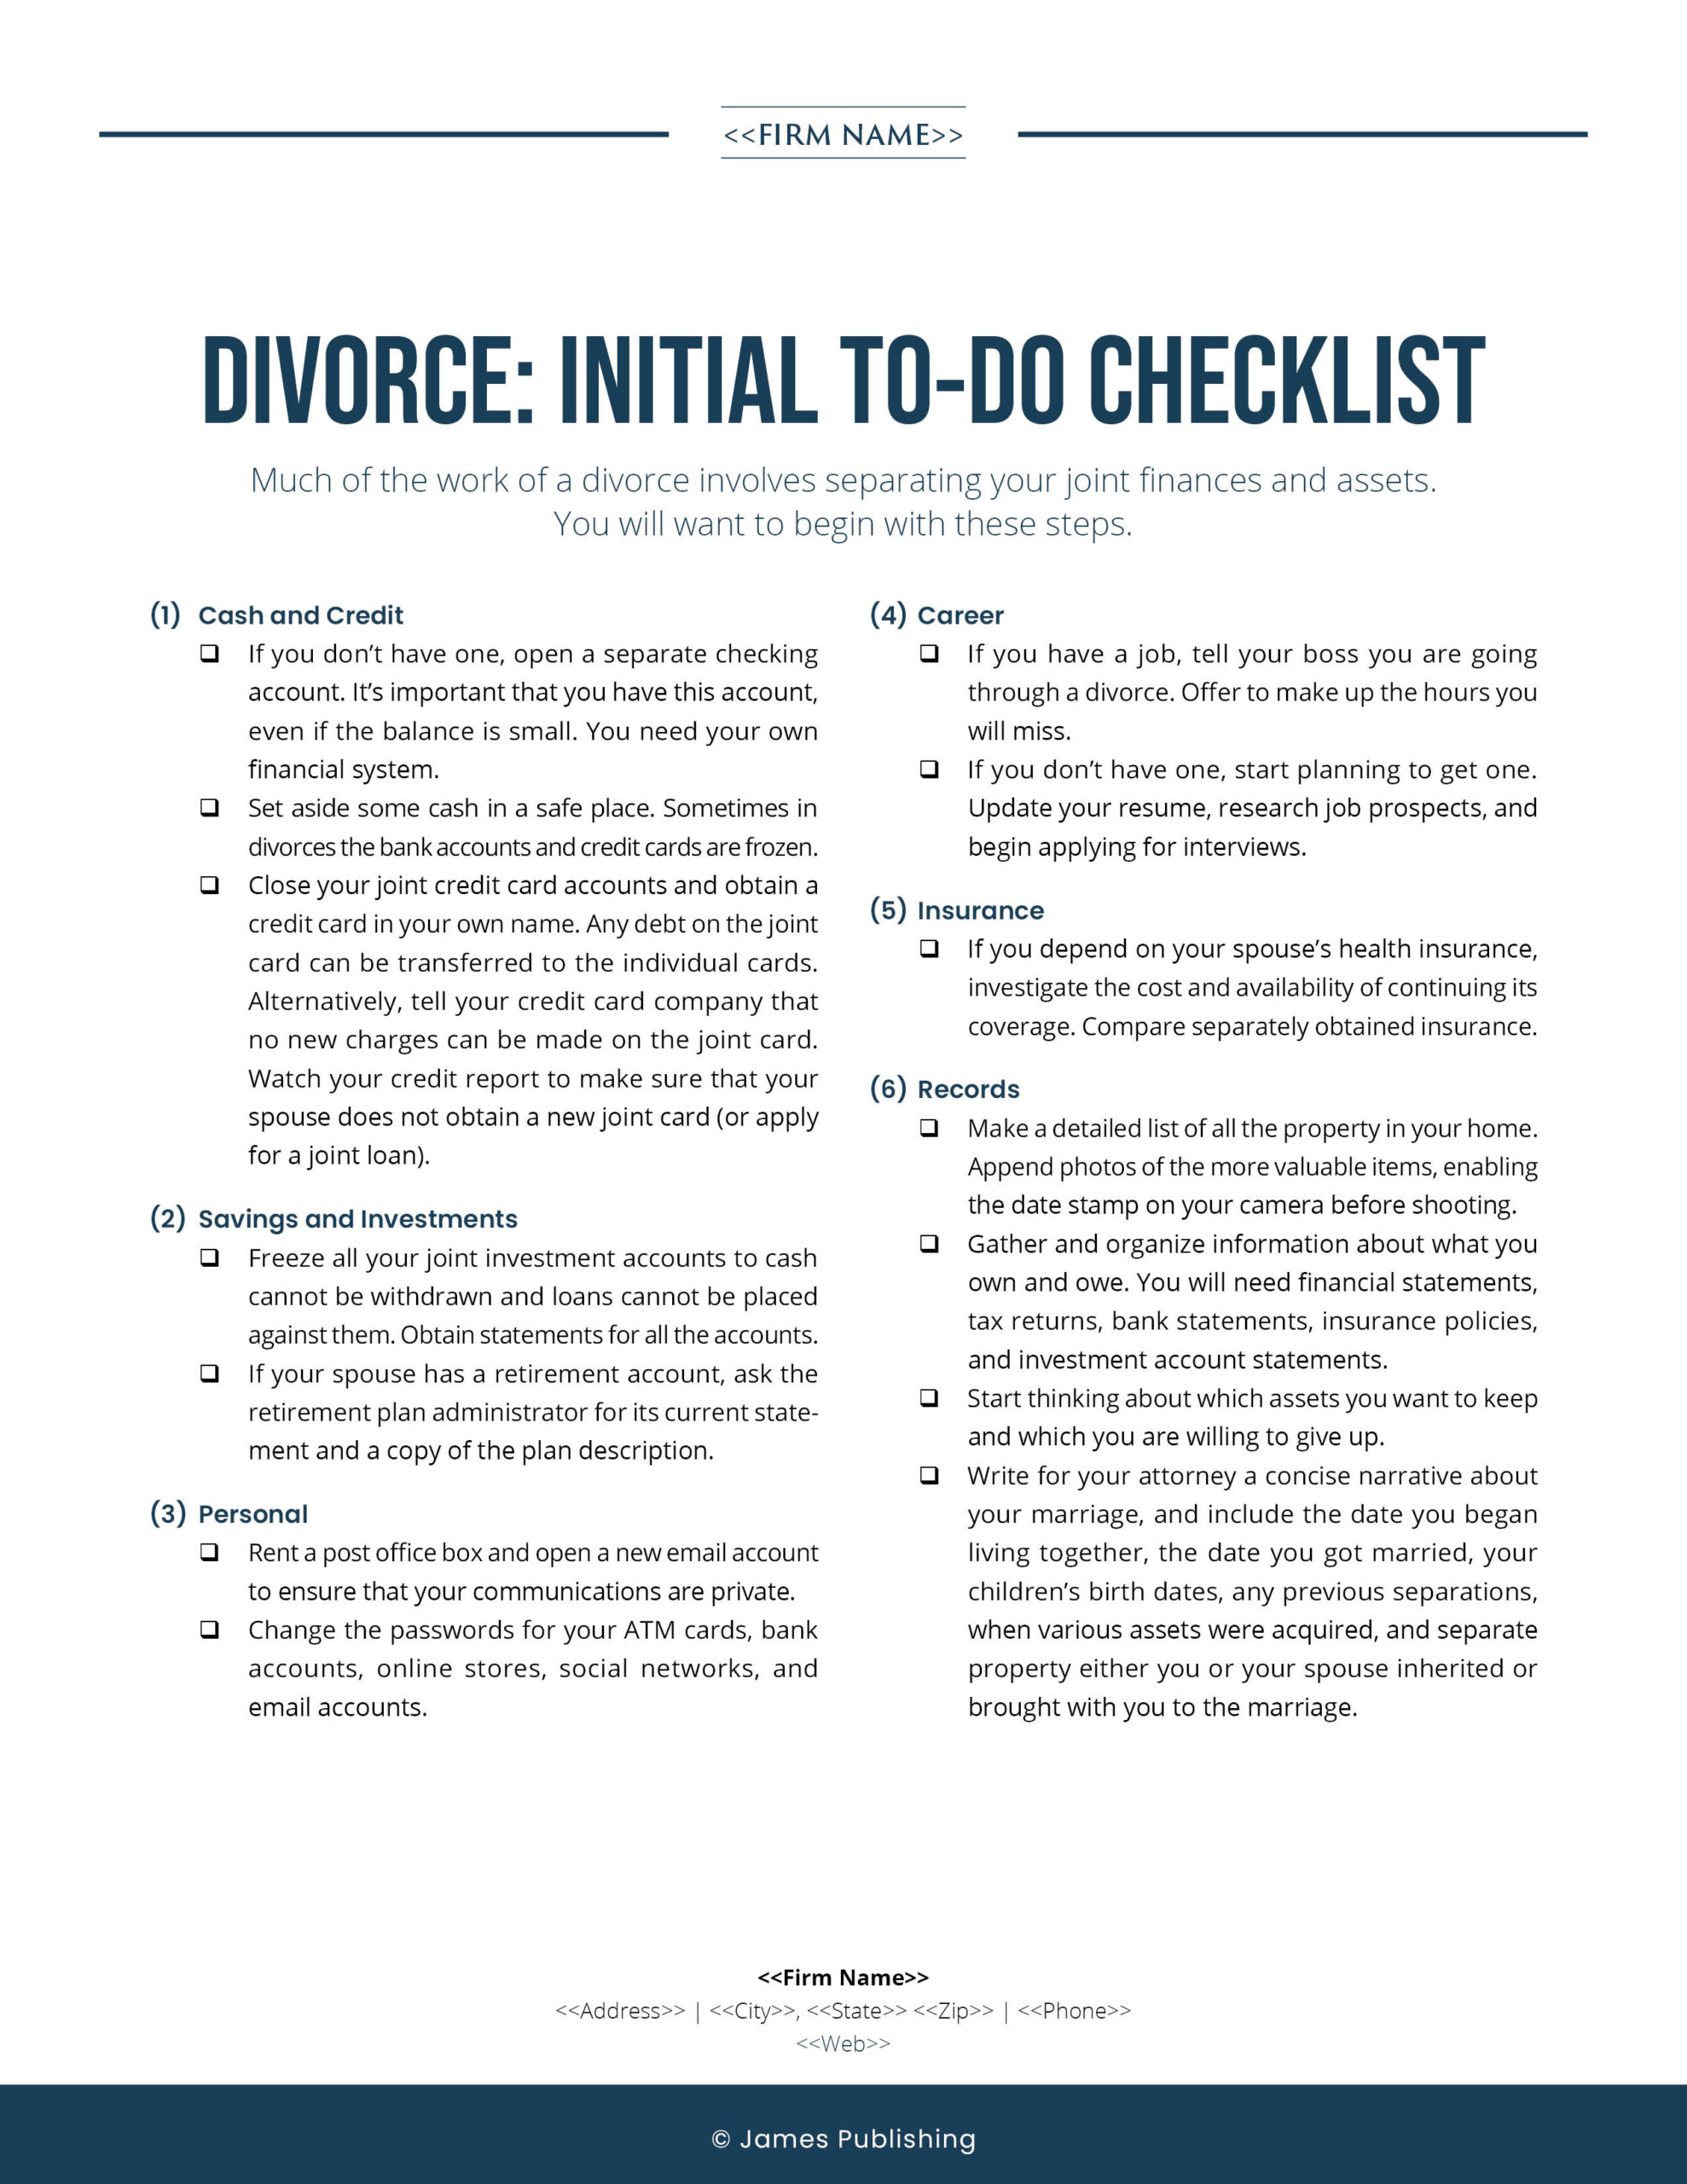 FAM-06 Divorce: Initial To-Do Checklist